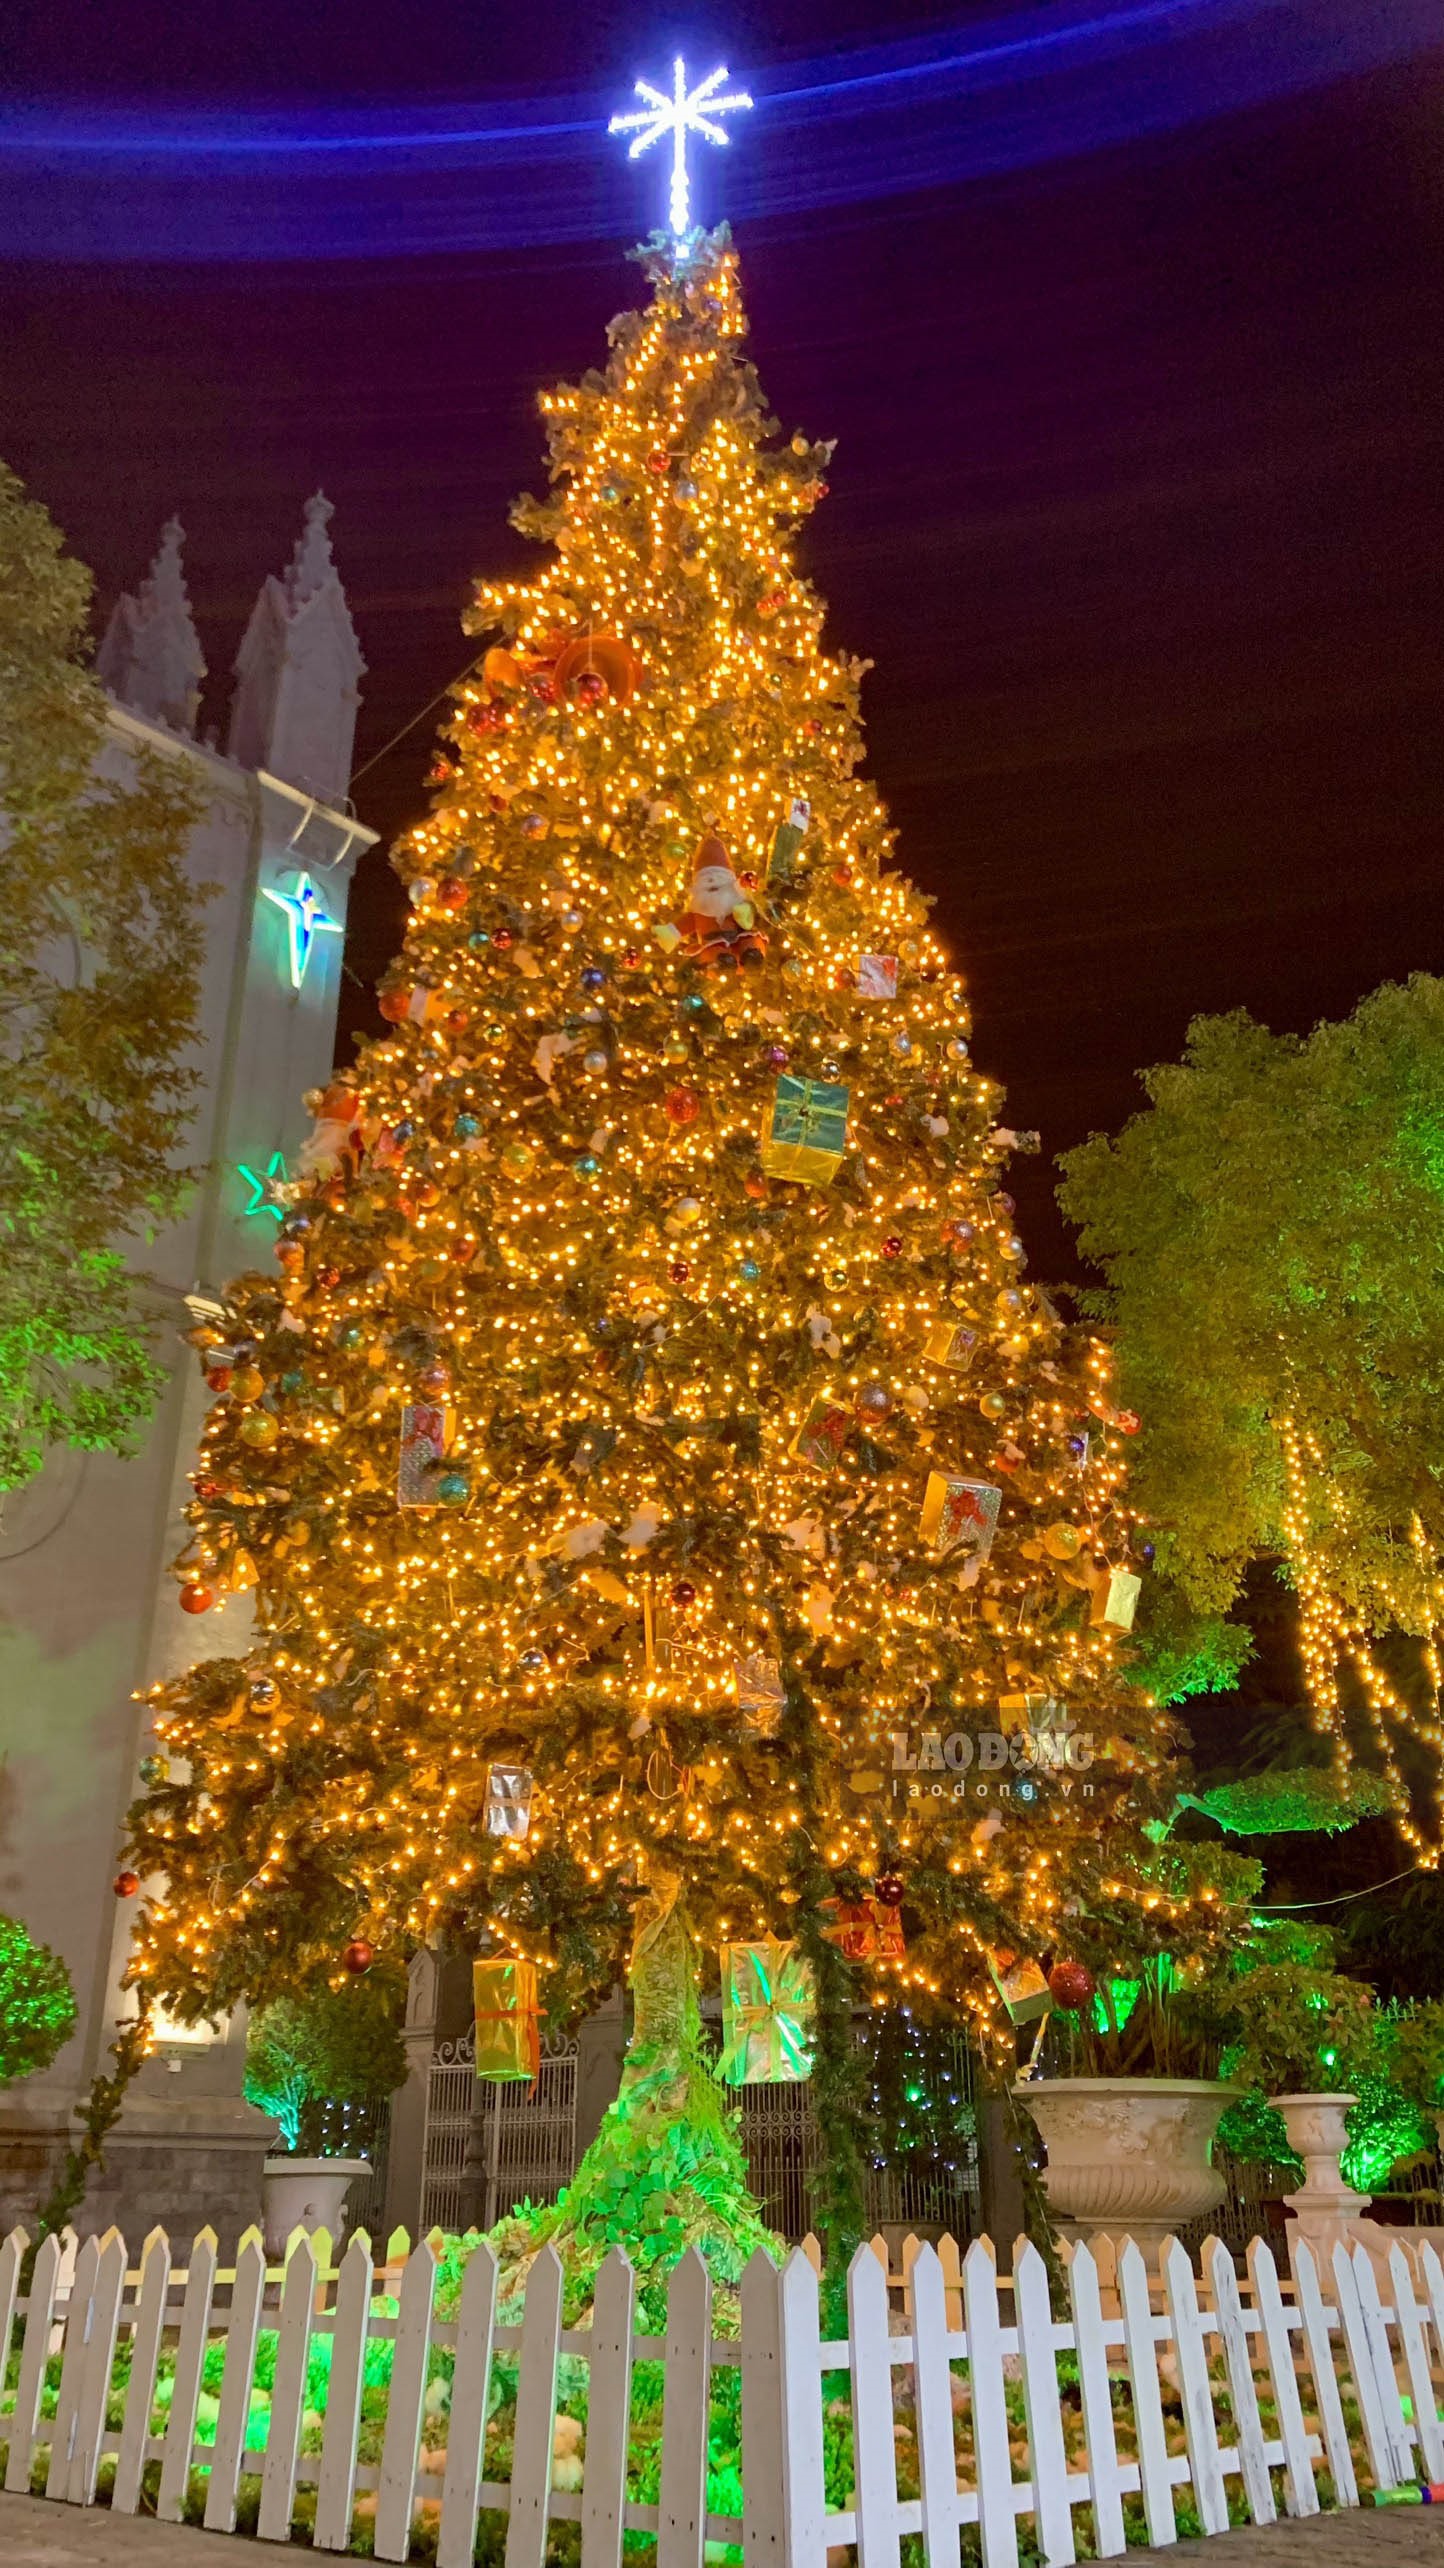 Cây thông Giáng sinh tại Hải Phòng được trang hoàng đầy màu sắc, tạo nên khung cảnh đầy ấm áp và lãng mạn. Hãy đến thăm và cảm nhận sức hút của cây thông này.